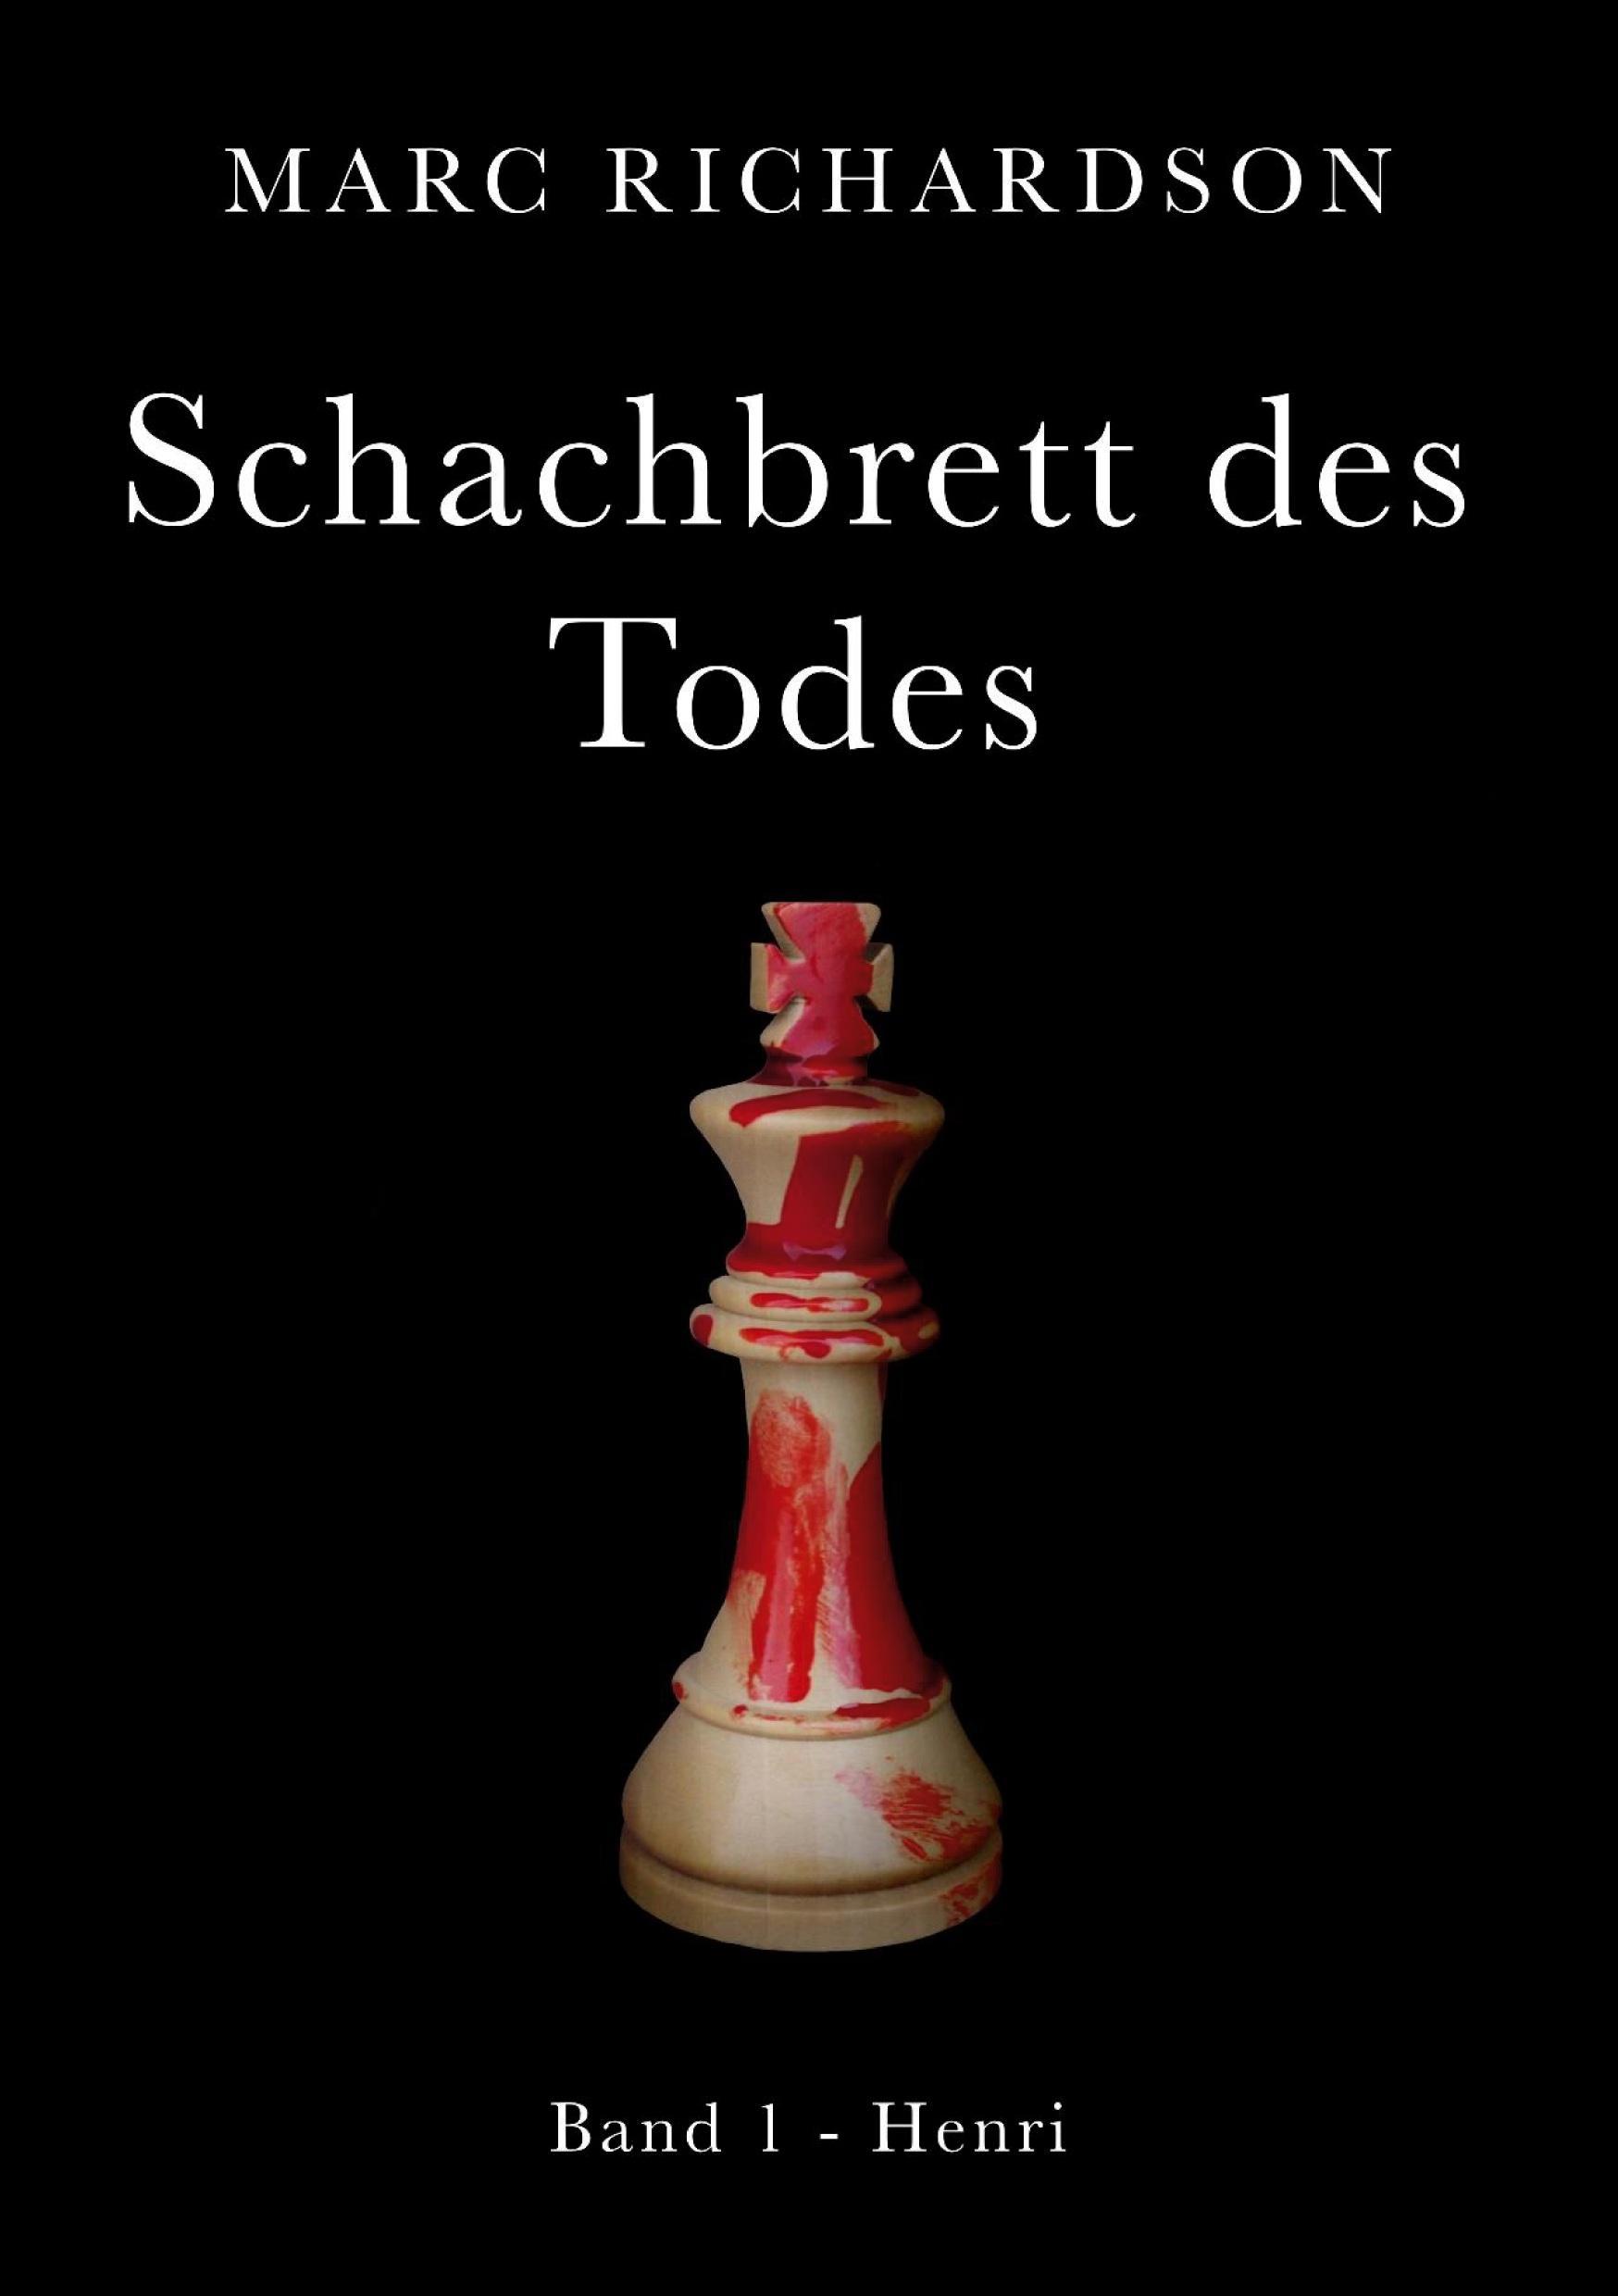 Schachbrett des Todes / Schachbrett des Todes Bd.1